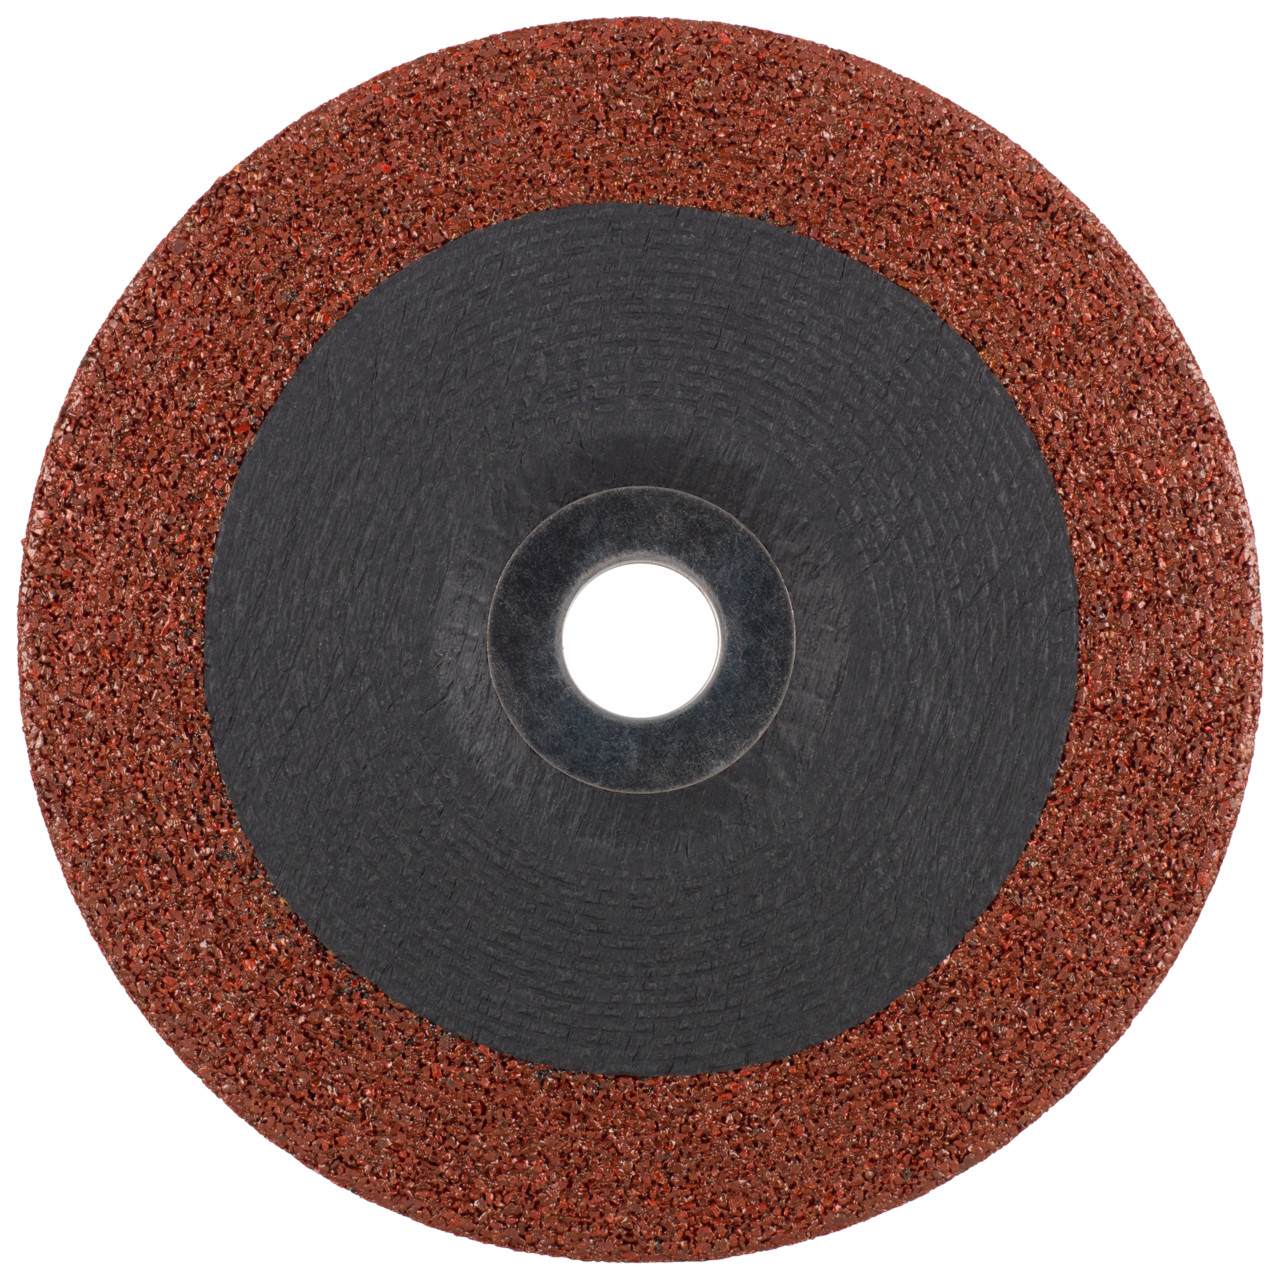 TYROLIT disco de desbaste DxUxH 178x7x22,23 3en1 para acero y acero inoxidable y fundición, forma: 27 - versión offset, Art. 466754